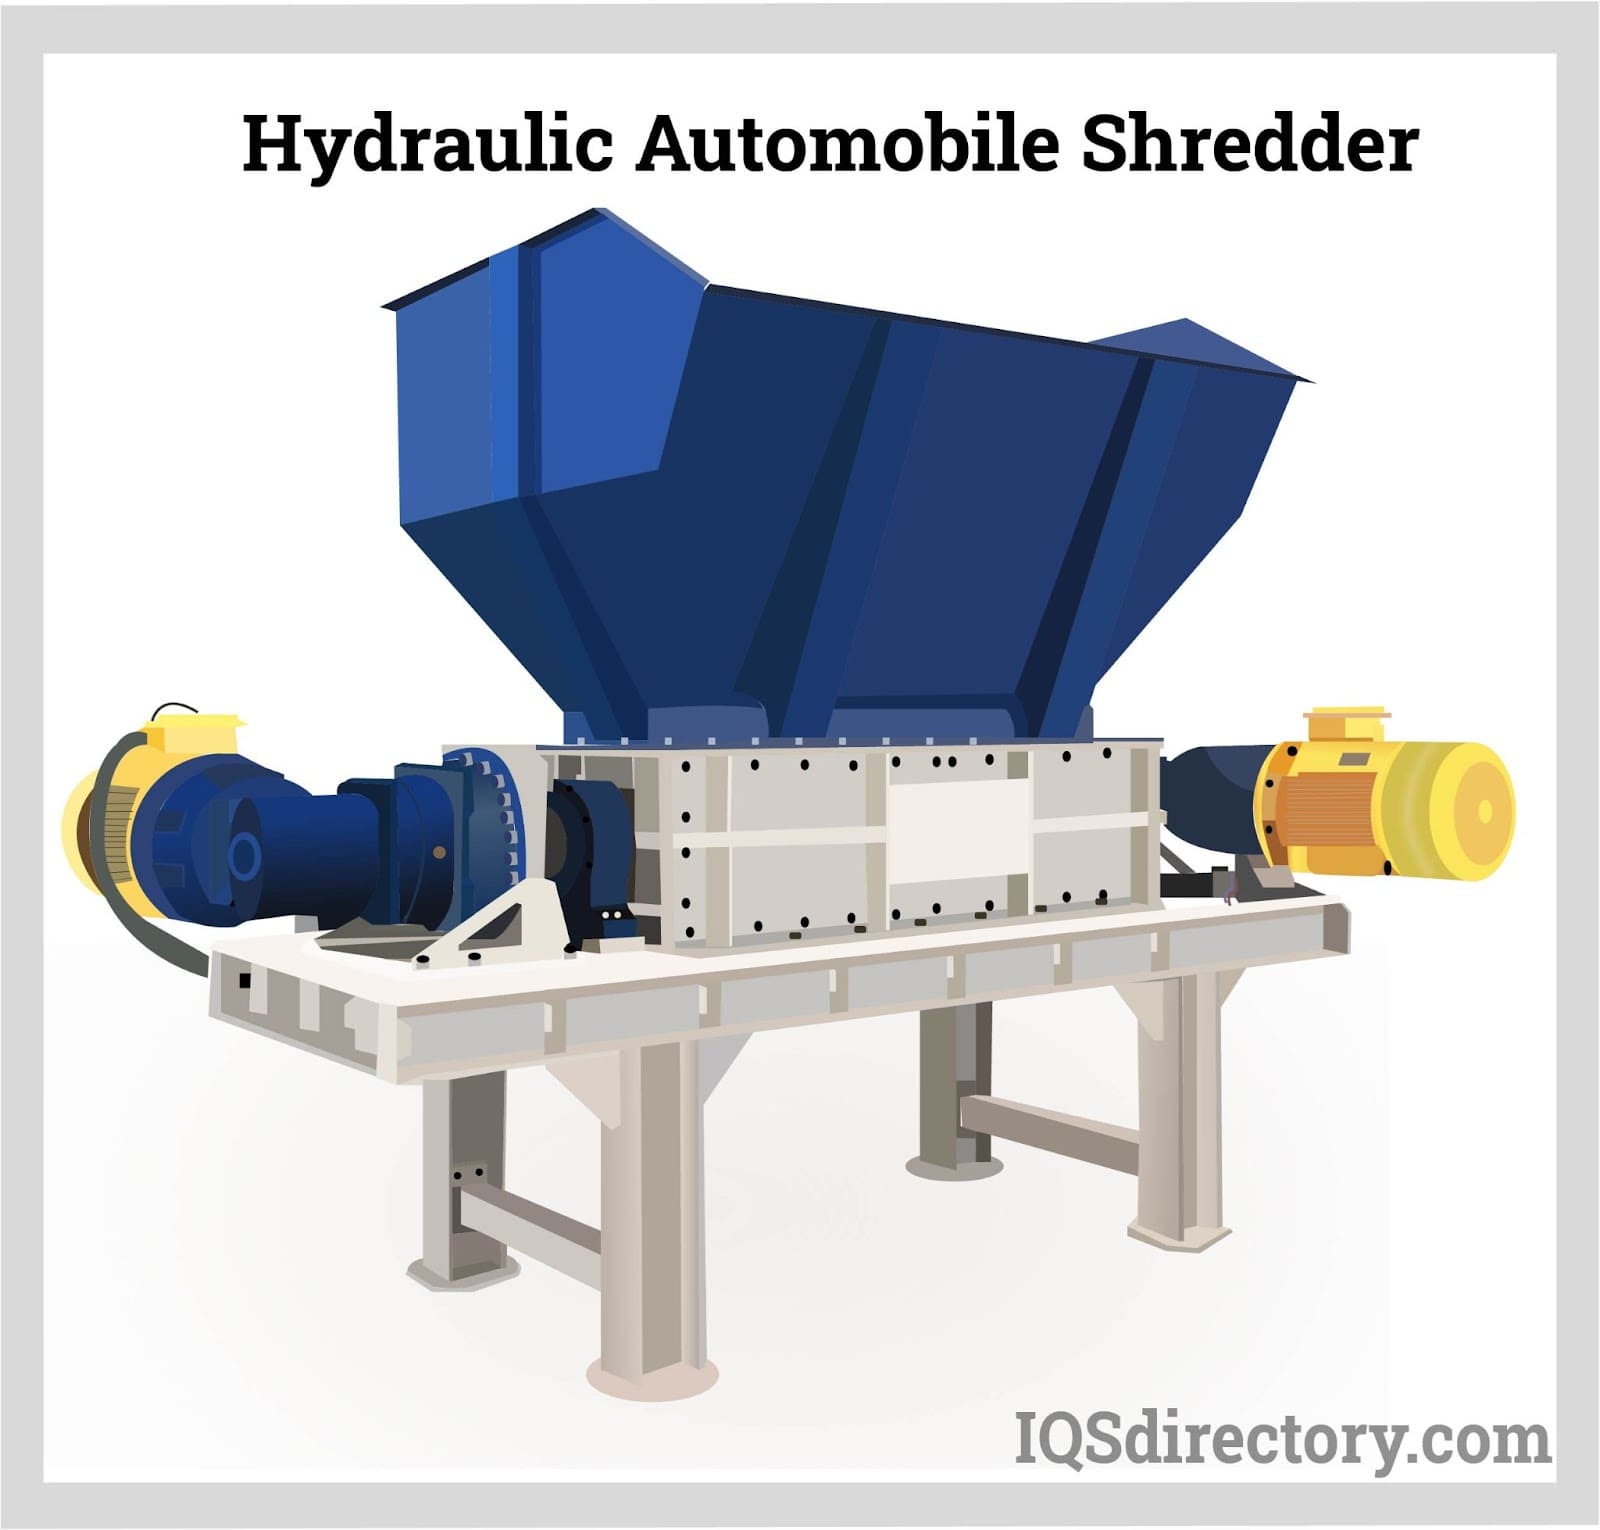 Hydraulic Automobile Shredder